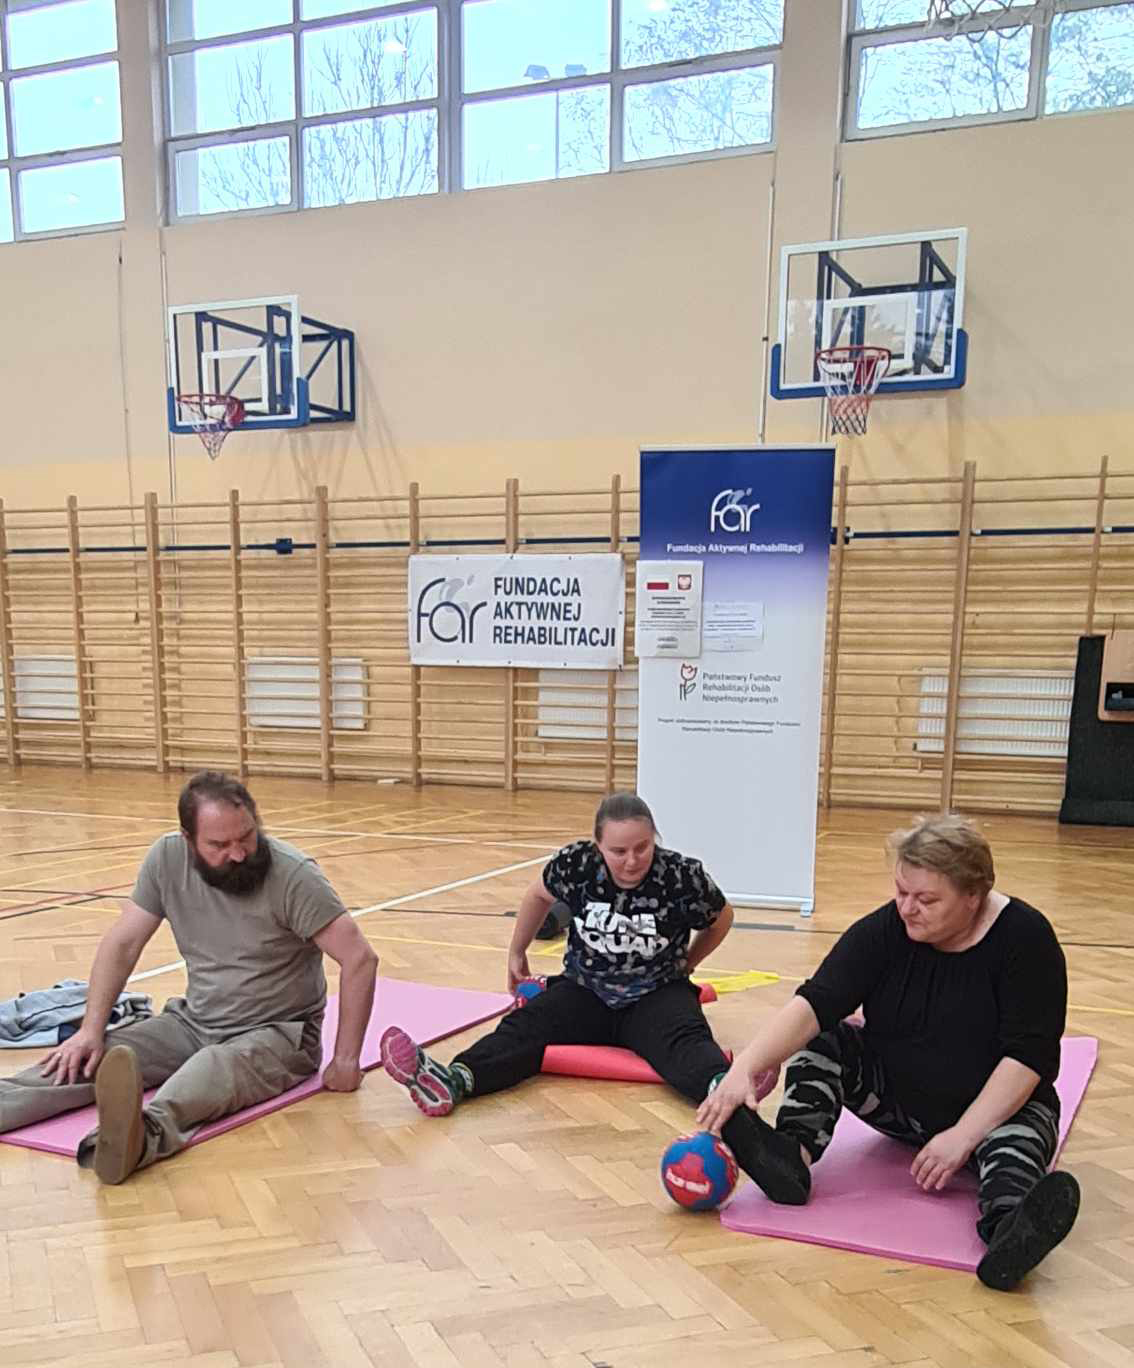 zdjęcie - WAZ Czudec, ćwiczenia z piłką w pozycji siedzącej na matecu na sali gimnastycznej. Ćwiczą trzy osoby.